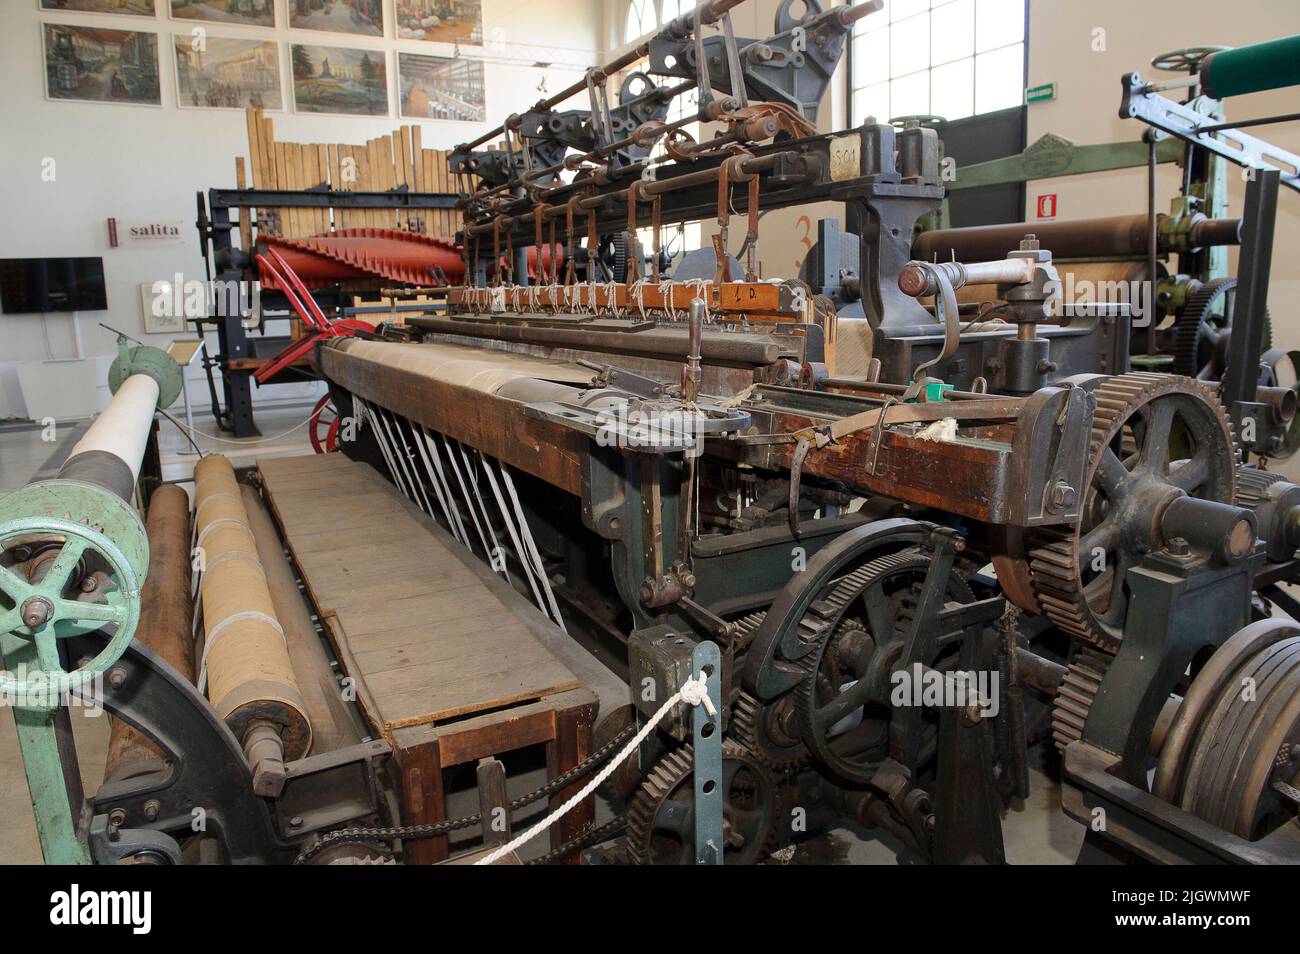 2020 luglio 07 - Europa, Italia, Lombardia, Varese, Busto Arsizio, museo tessile con vecchie macchine per la lavorazione del tessuto. telaio a frusta con cops shu Foto Stock